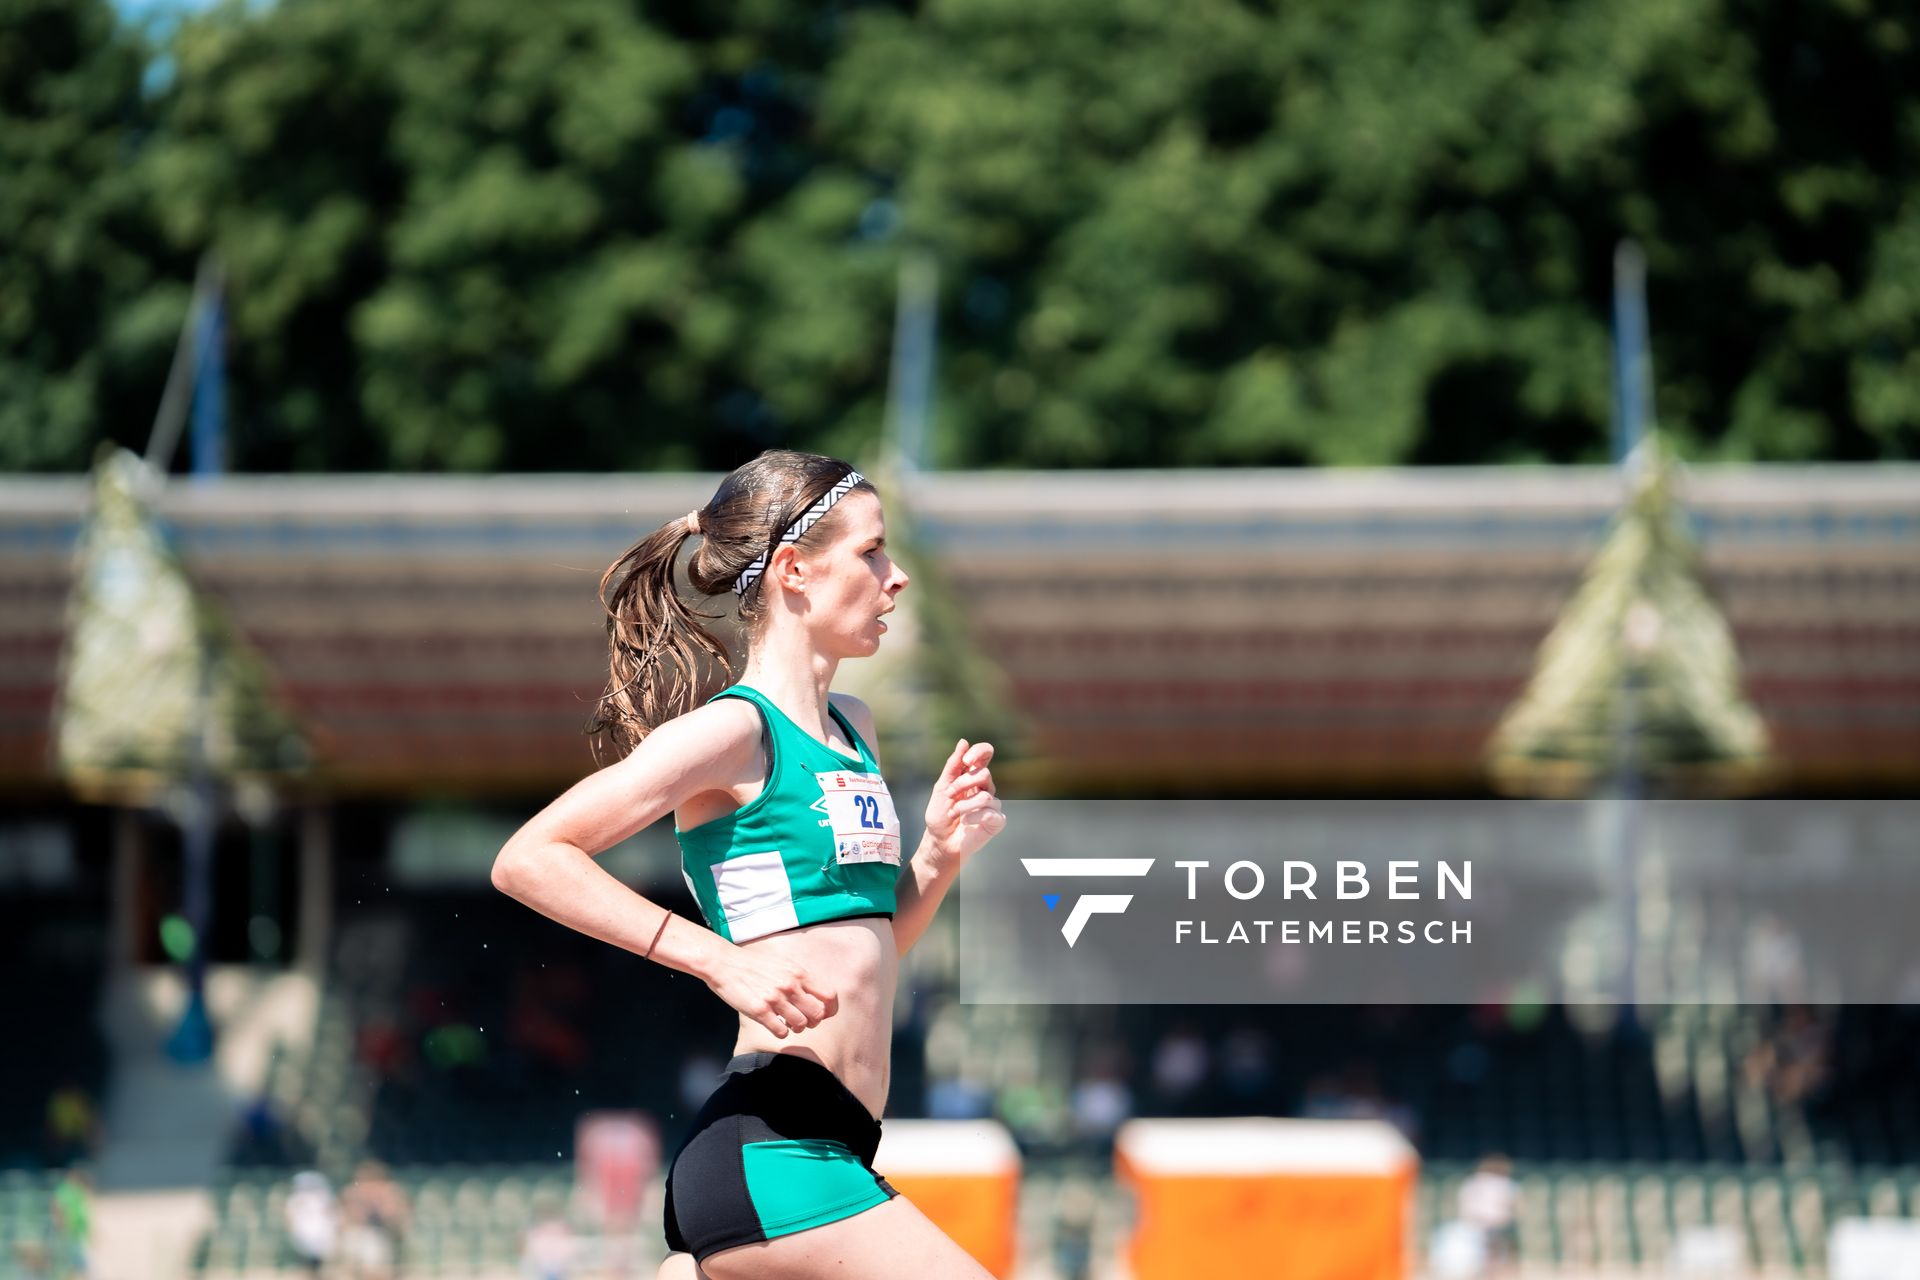 Carolin Kirtzel (SV Werder Bremen) ueber 500m m 03.07.2022 waehrend den NLV+BLV Leichtathletik-Landesmeisterschaften im Jahnstadion in Goettingen (Tag 1)